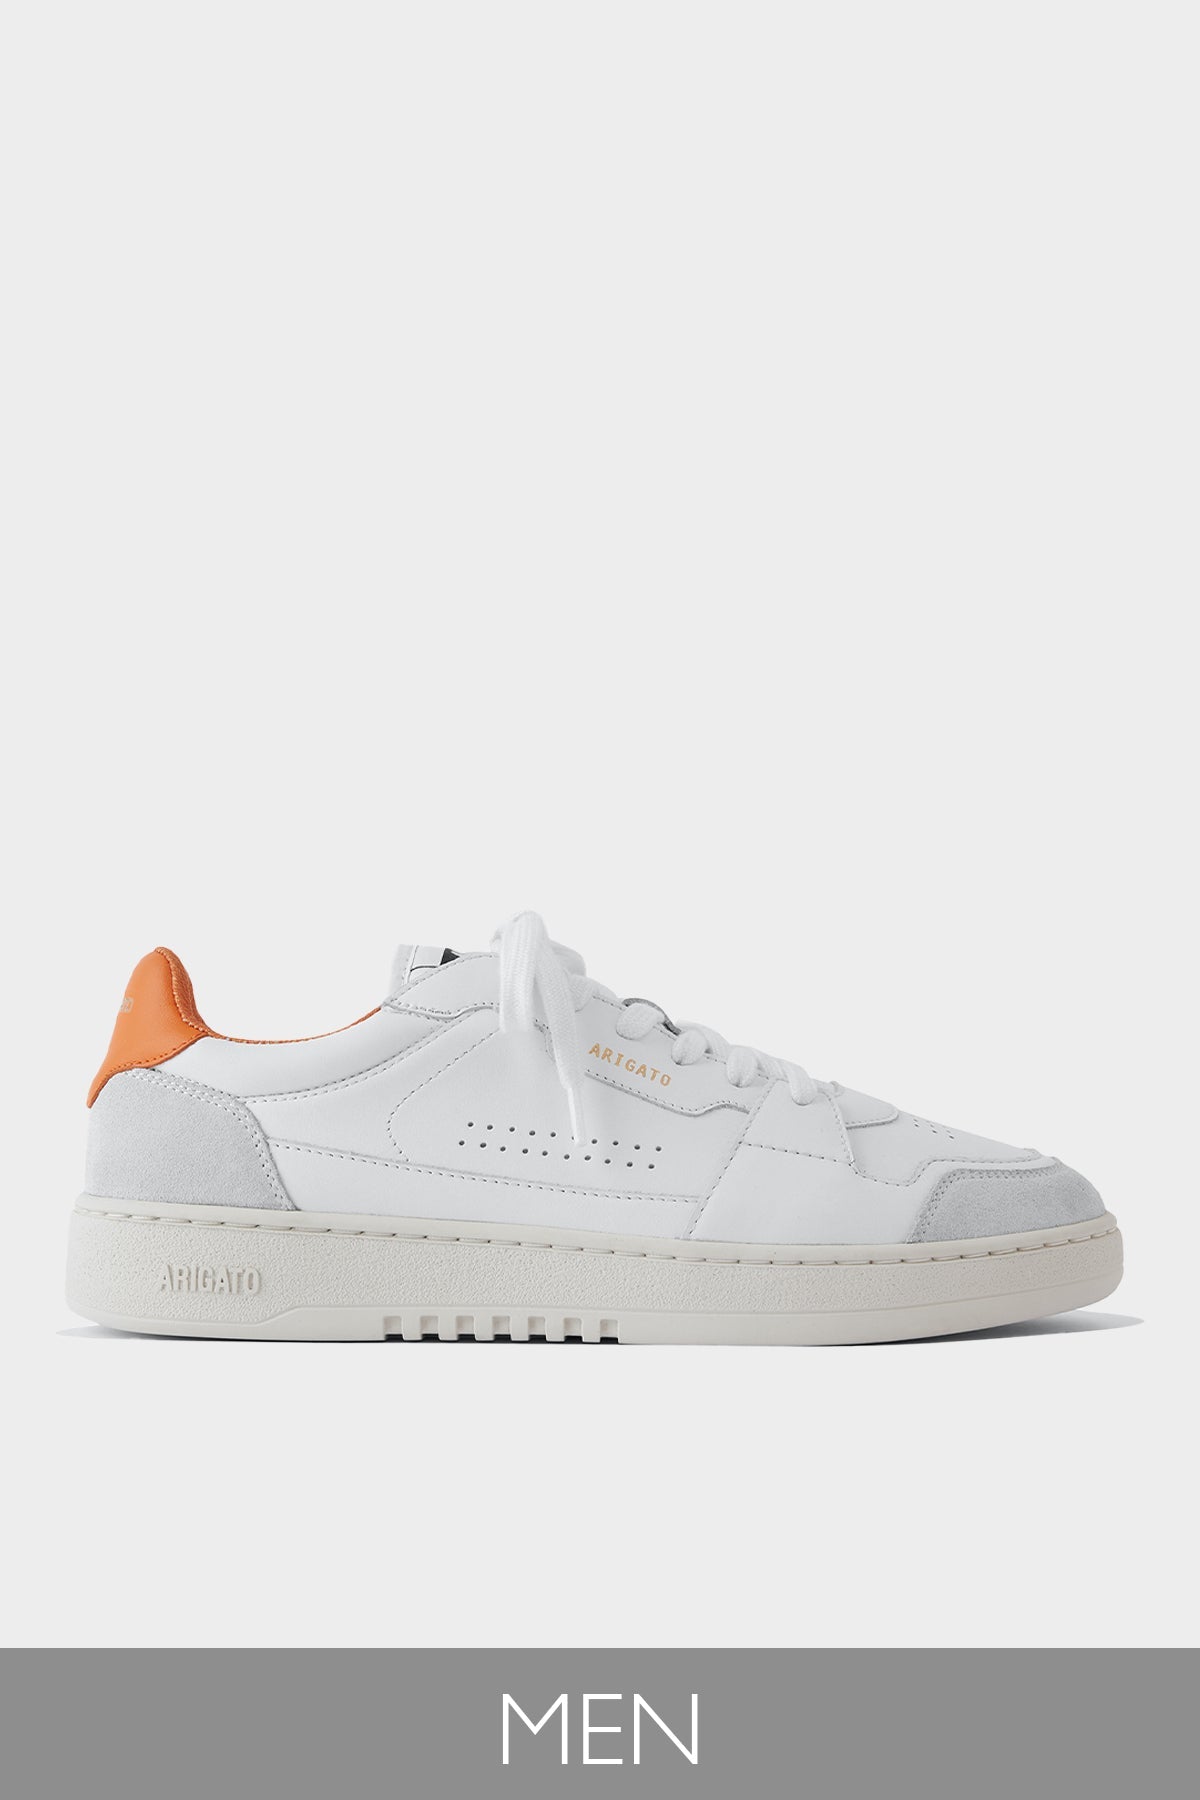 Dice Lo Men Sneaker in White Orange - shop-olivia.com